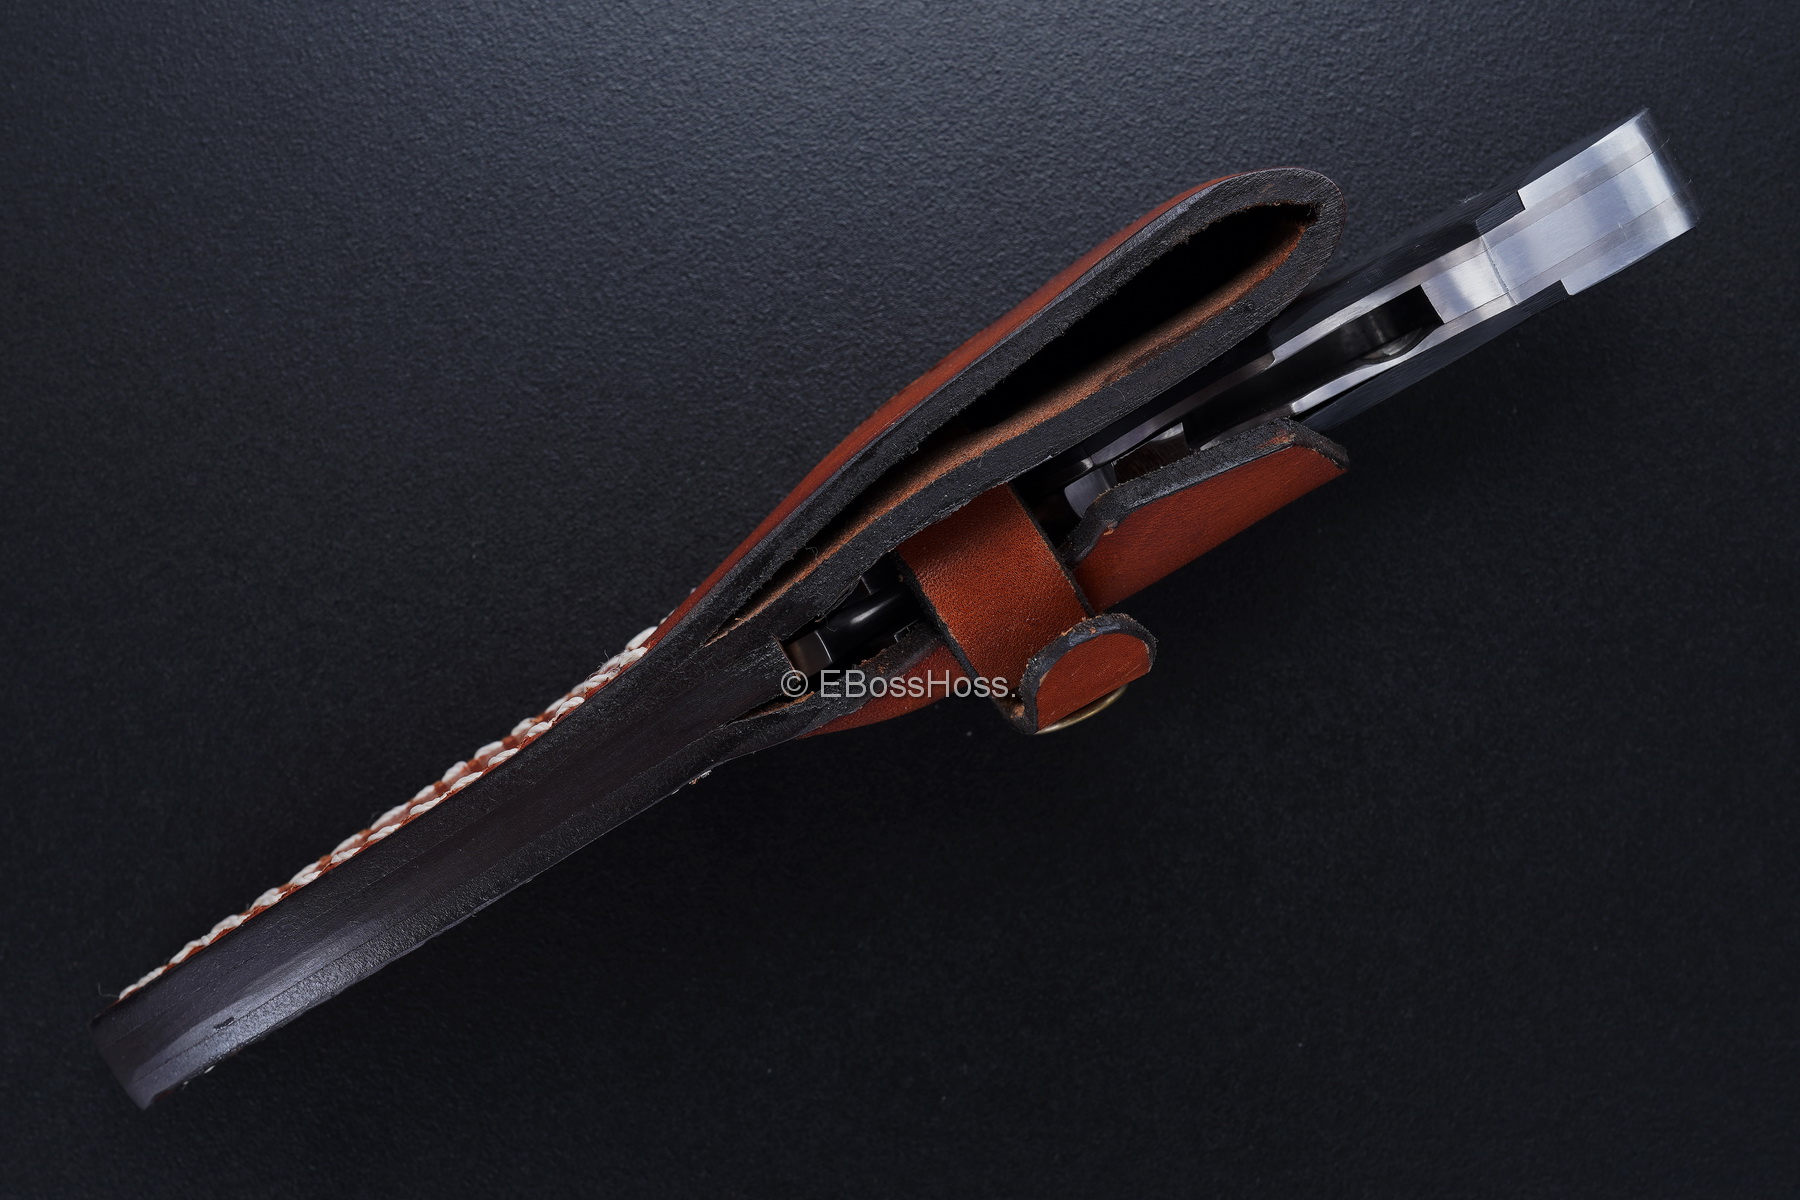  Kansei Matsuno Custom Loveless-style Sheath Knife / Push-Dagger Convertible